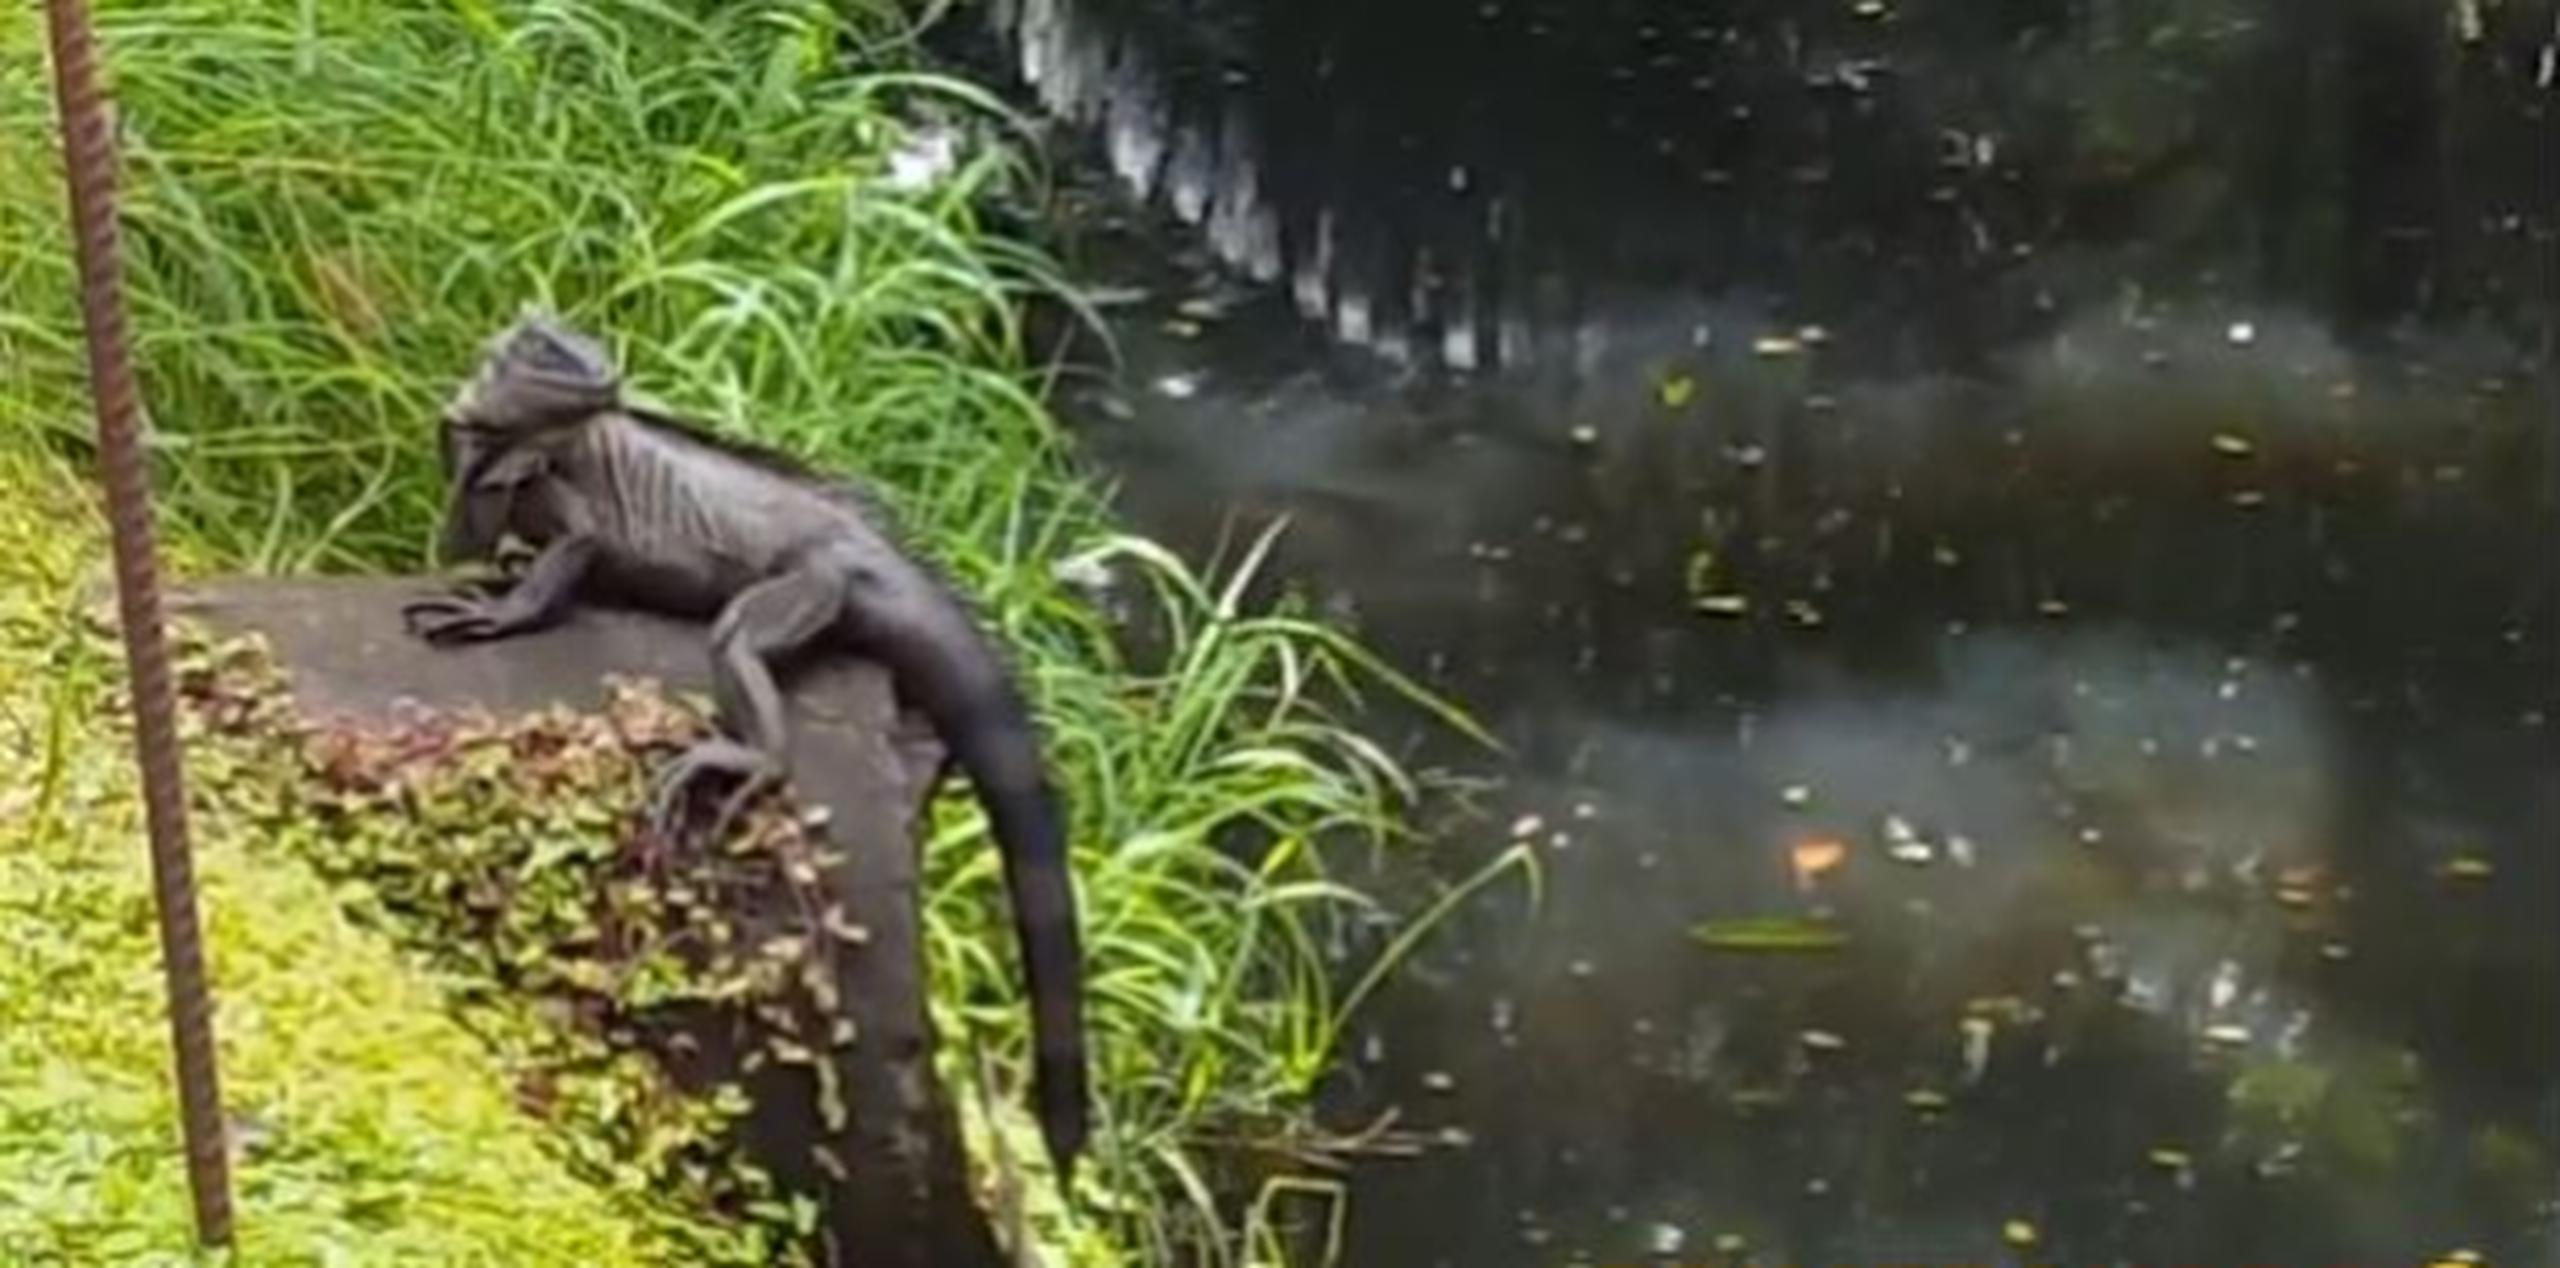 Contrario a las teorías que circularon en internet, el biólogo dijo que la iguana "no tiene la capacidad" para camuflarse como un camaleón. (Captura)